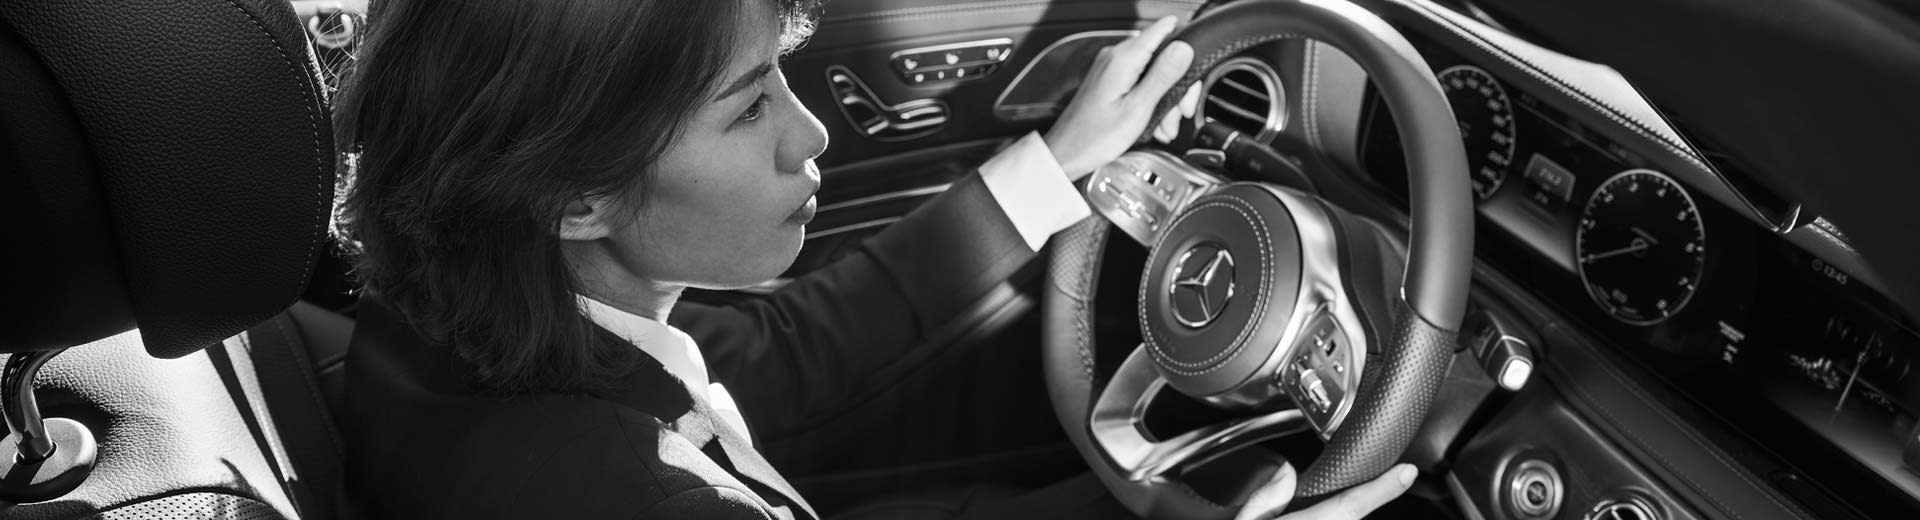 Yen, una chófer asociada de Blacklane, está sentada en un Mercedes, con ambas manos sobre el volante y enfocada en la carretera.